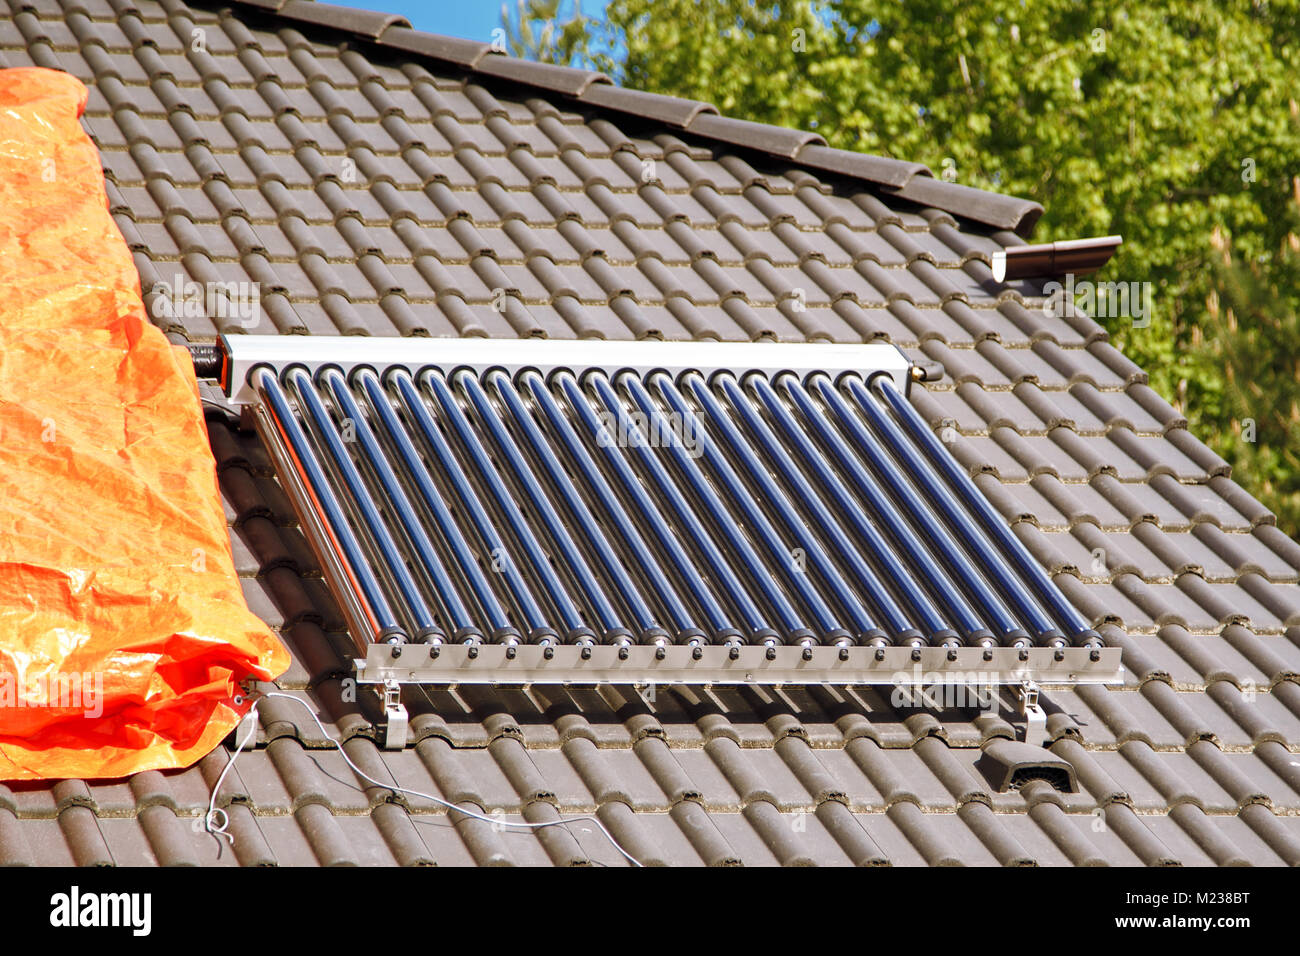 Solar Glas Rohr Warmwasser panel Array auf ein Haus Dach vor einem blauen  Himmel montiert Stockfotografie - Alamy